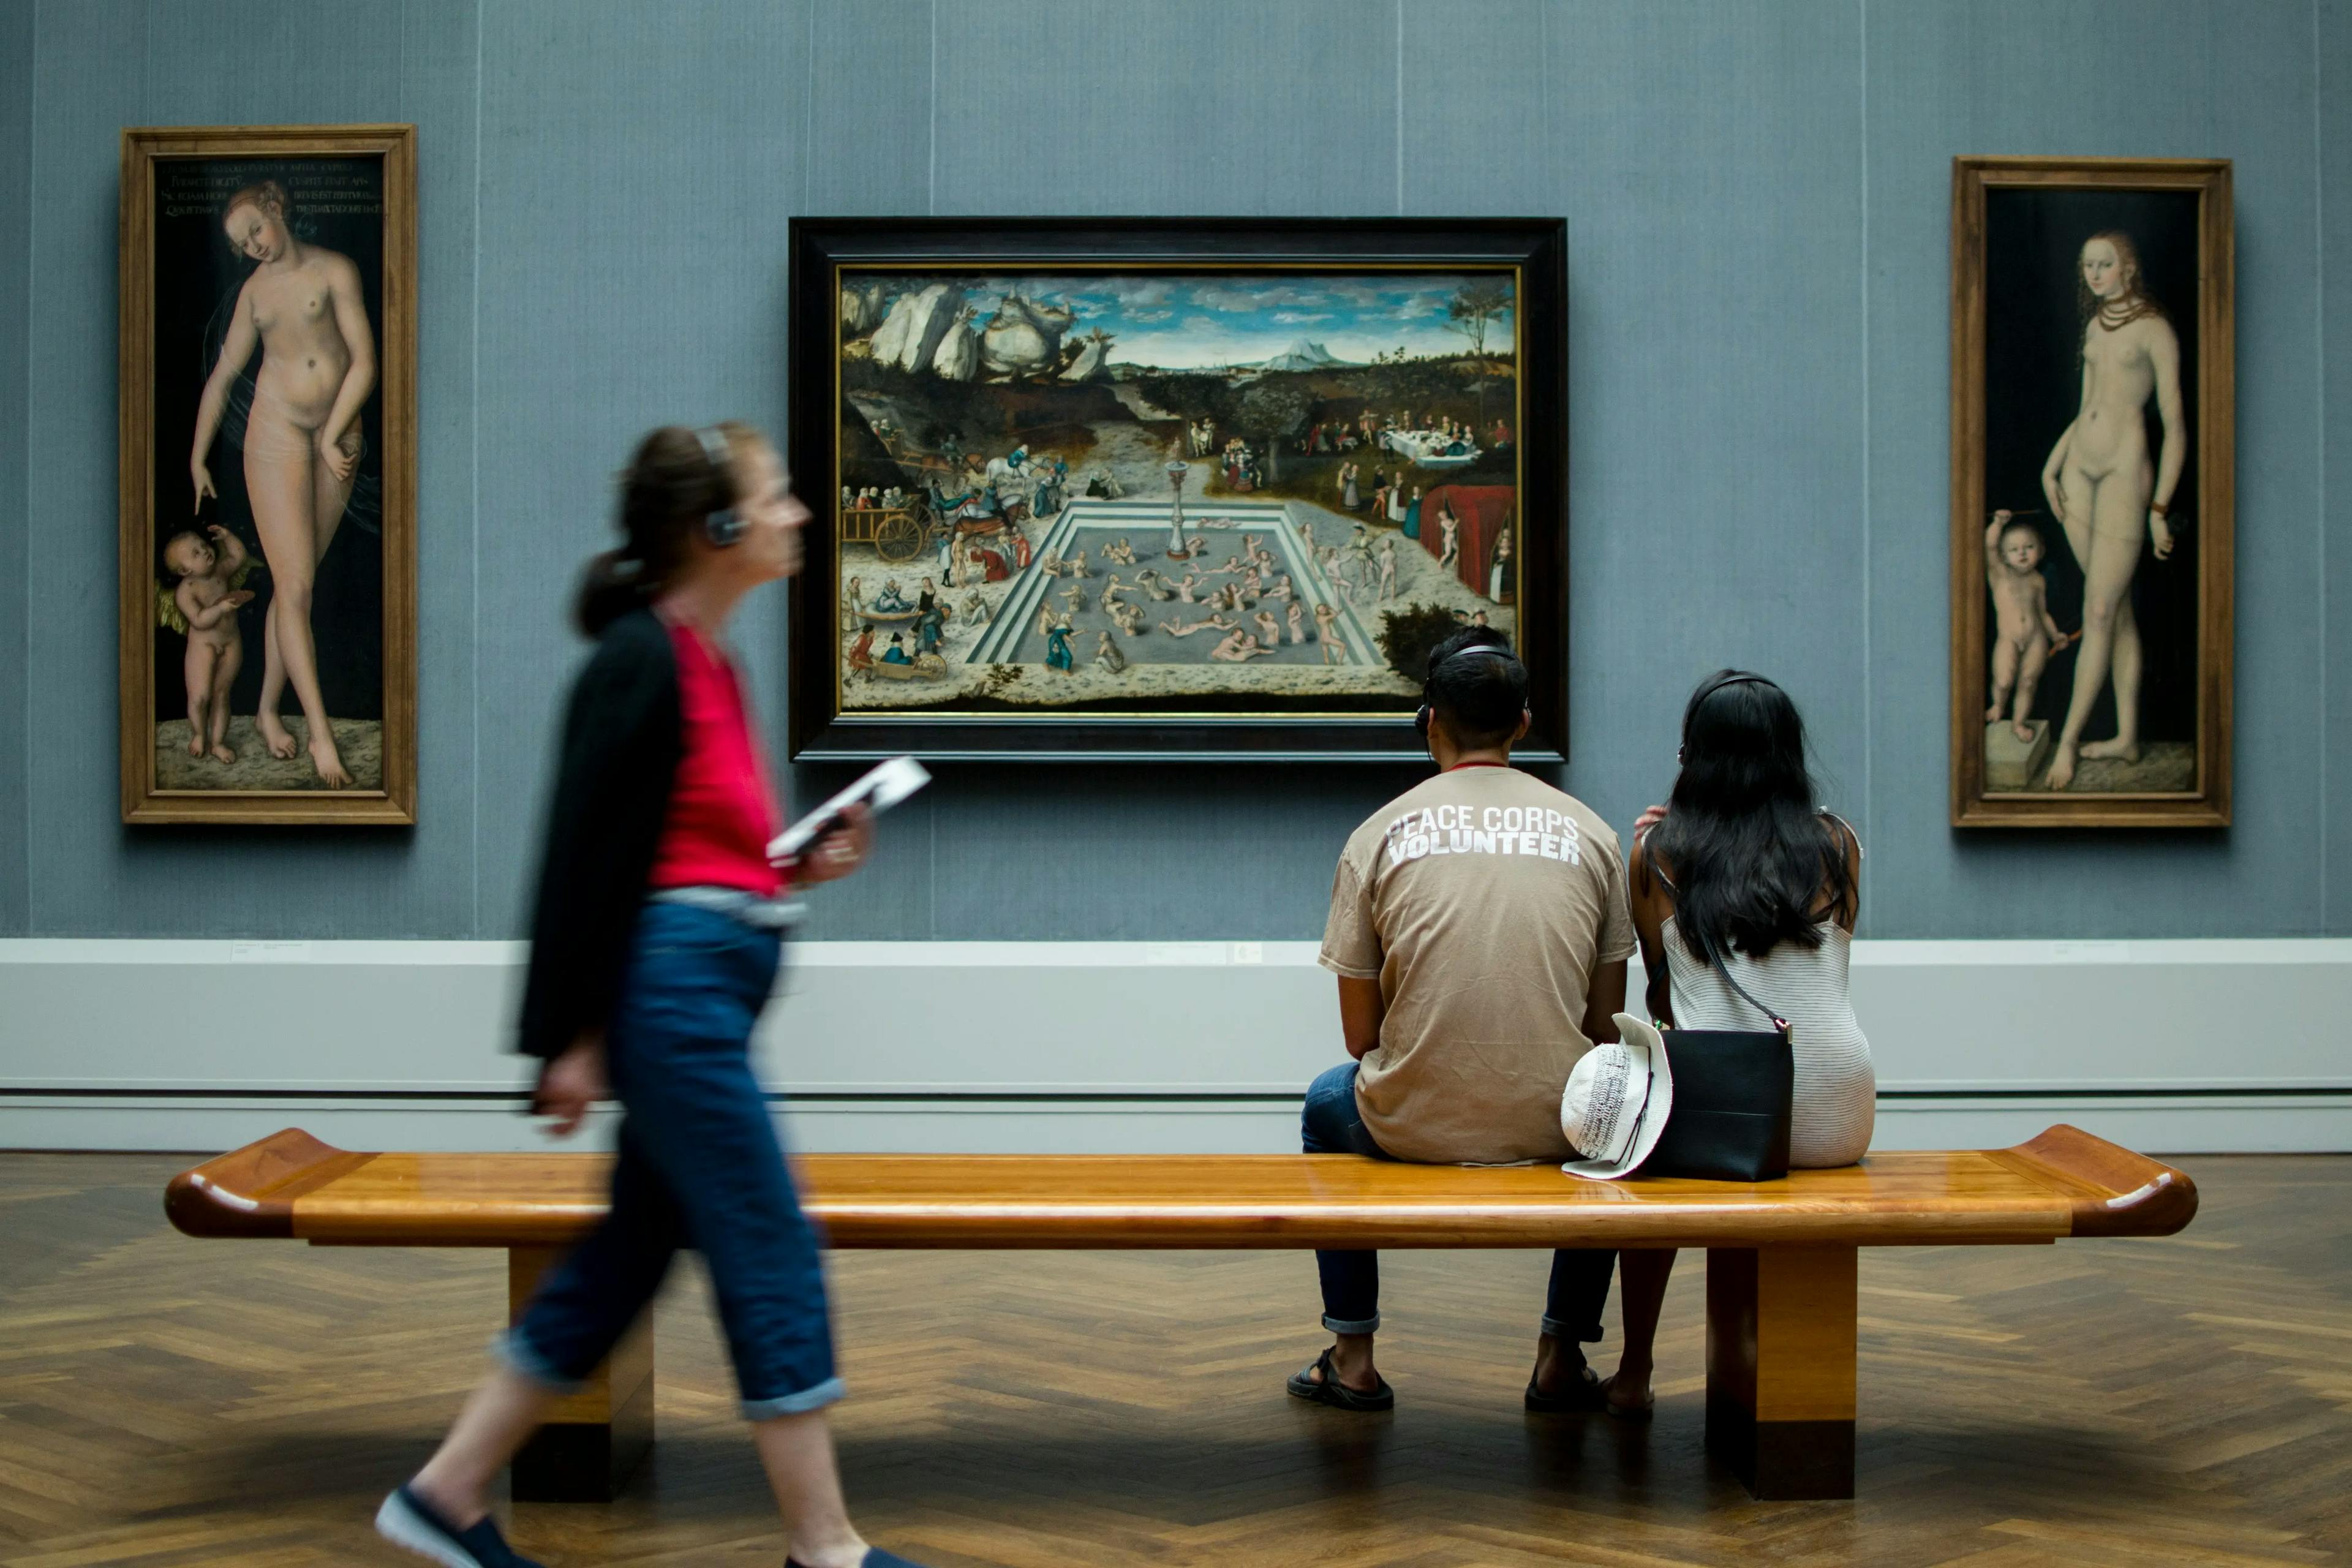 Visitatori osservano un dipinto mentre una signora attraversa la stanza ascoltando un'audioguida